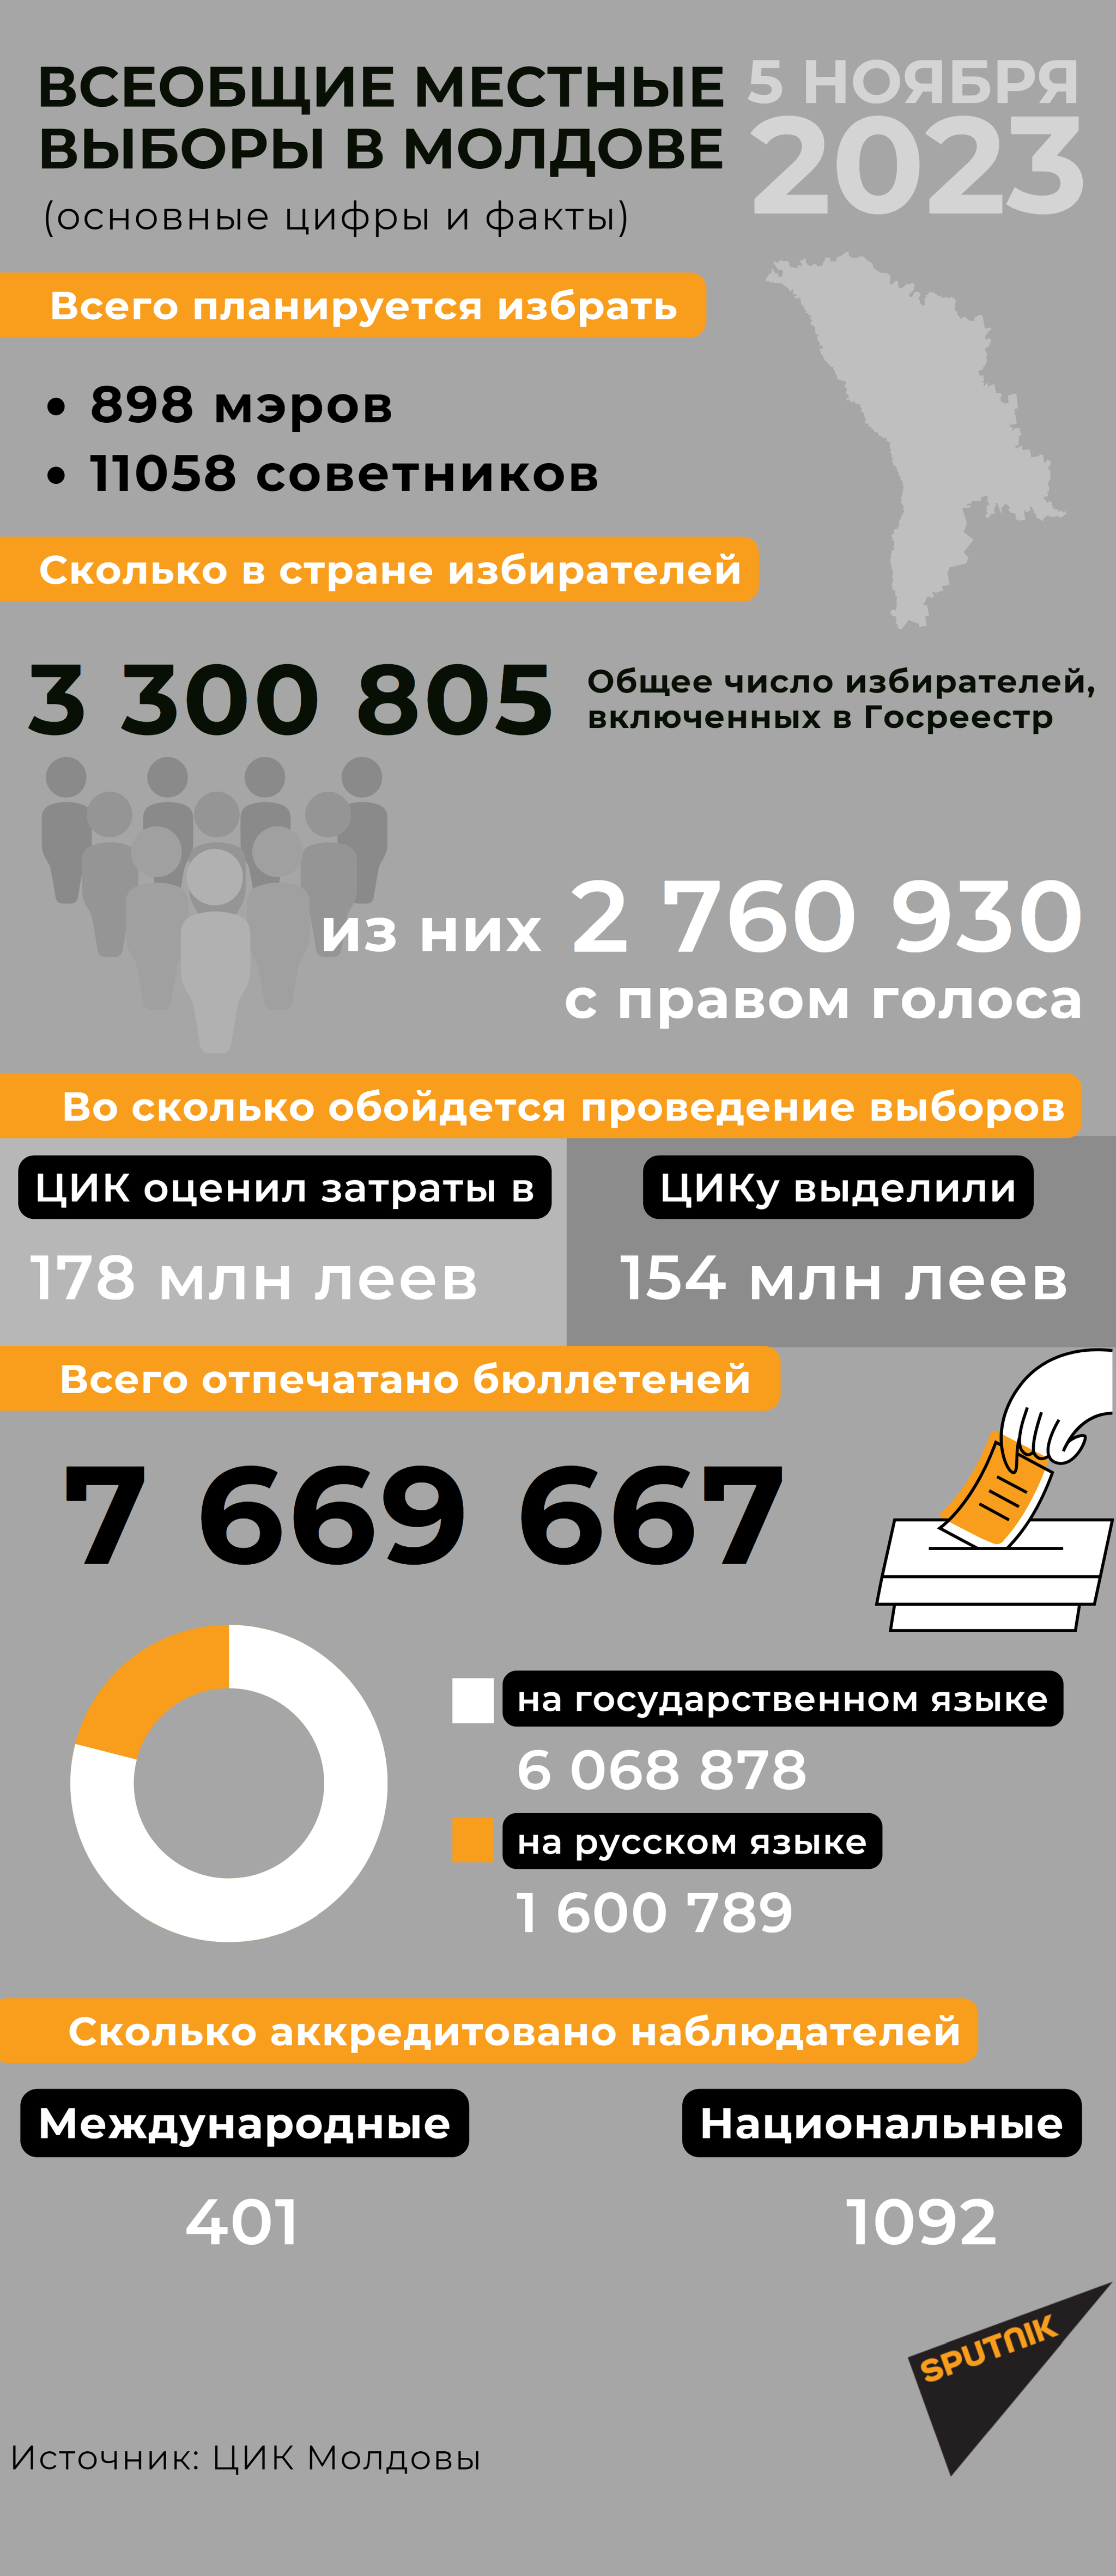 Всеобщие местные выборы в Молдове 2023 - Sputnik Молдова